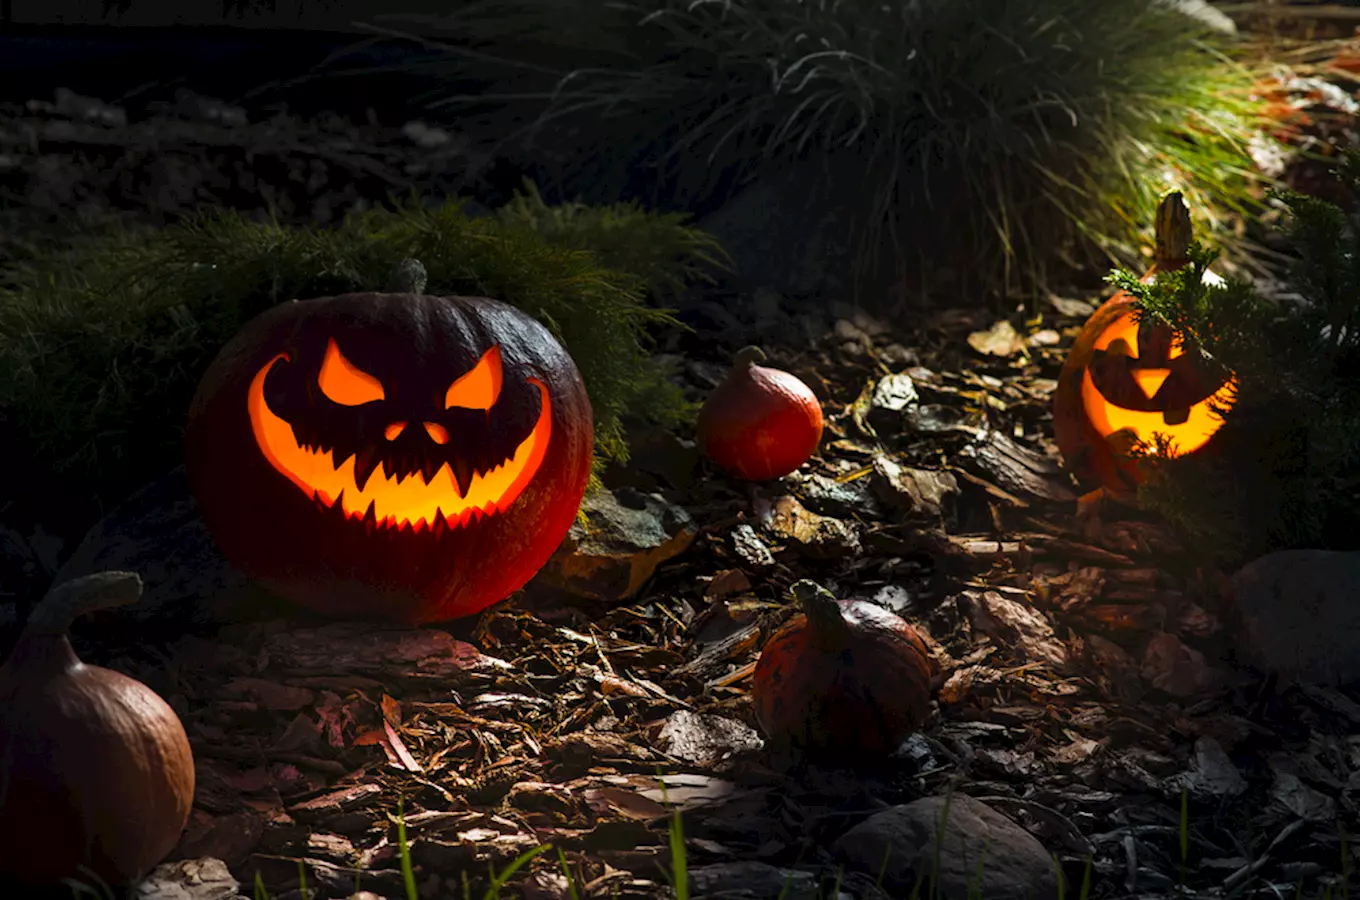 Samhain, Dušičky a Halloween: začátek keltského roku i vzpomínky na mrtvé